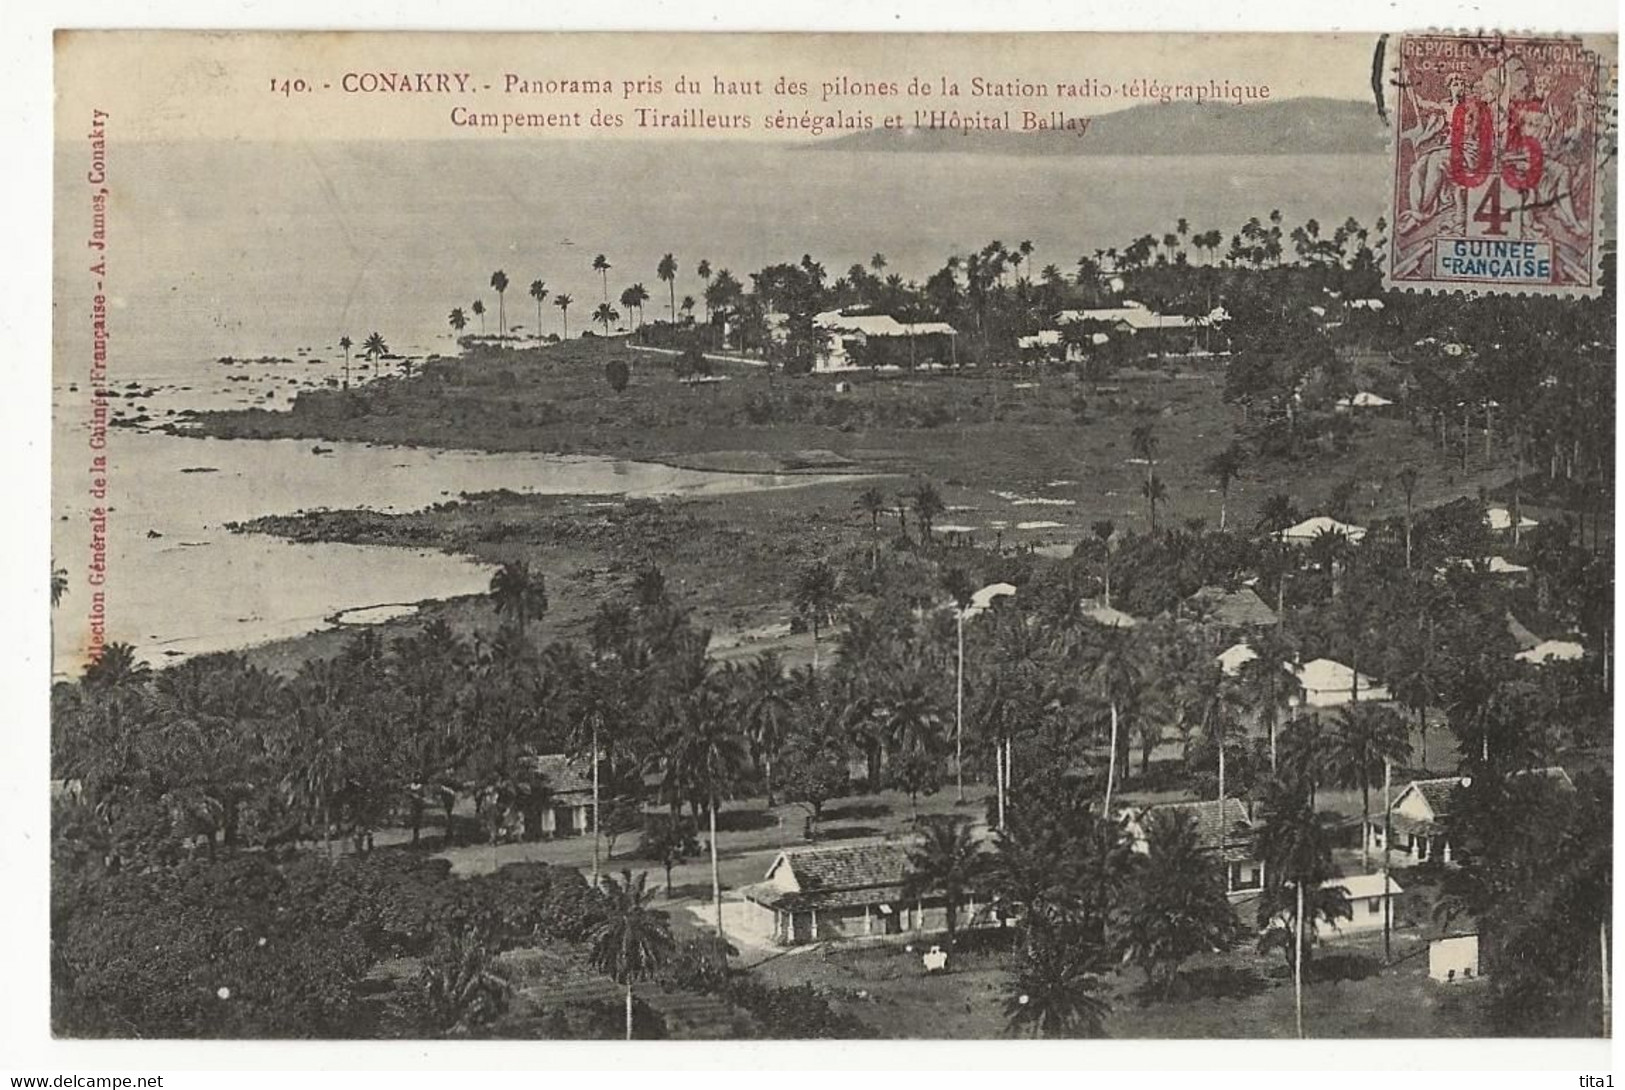 S8897 - CONAKRY - Panorama Pris Du Haut Des Pilones De La Station Radio Télégraphique - Camp. Des Tirailleurs Sénégalais - Guinée